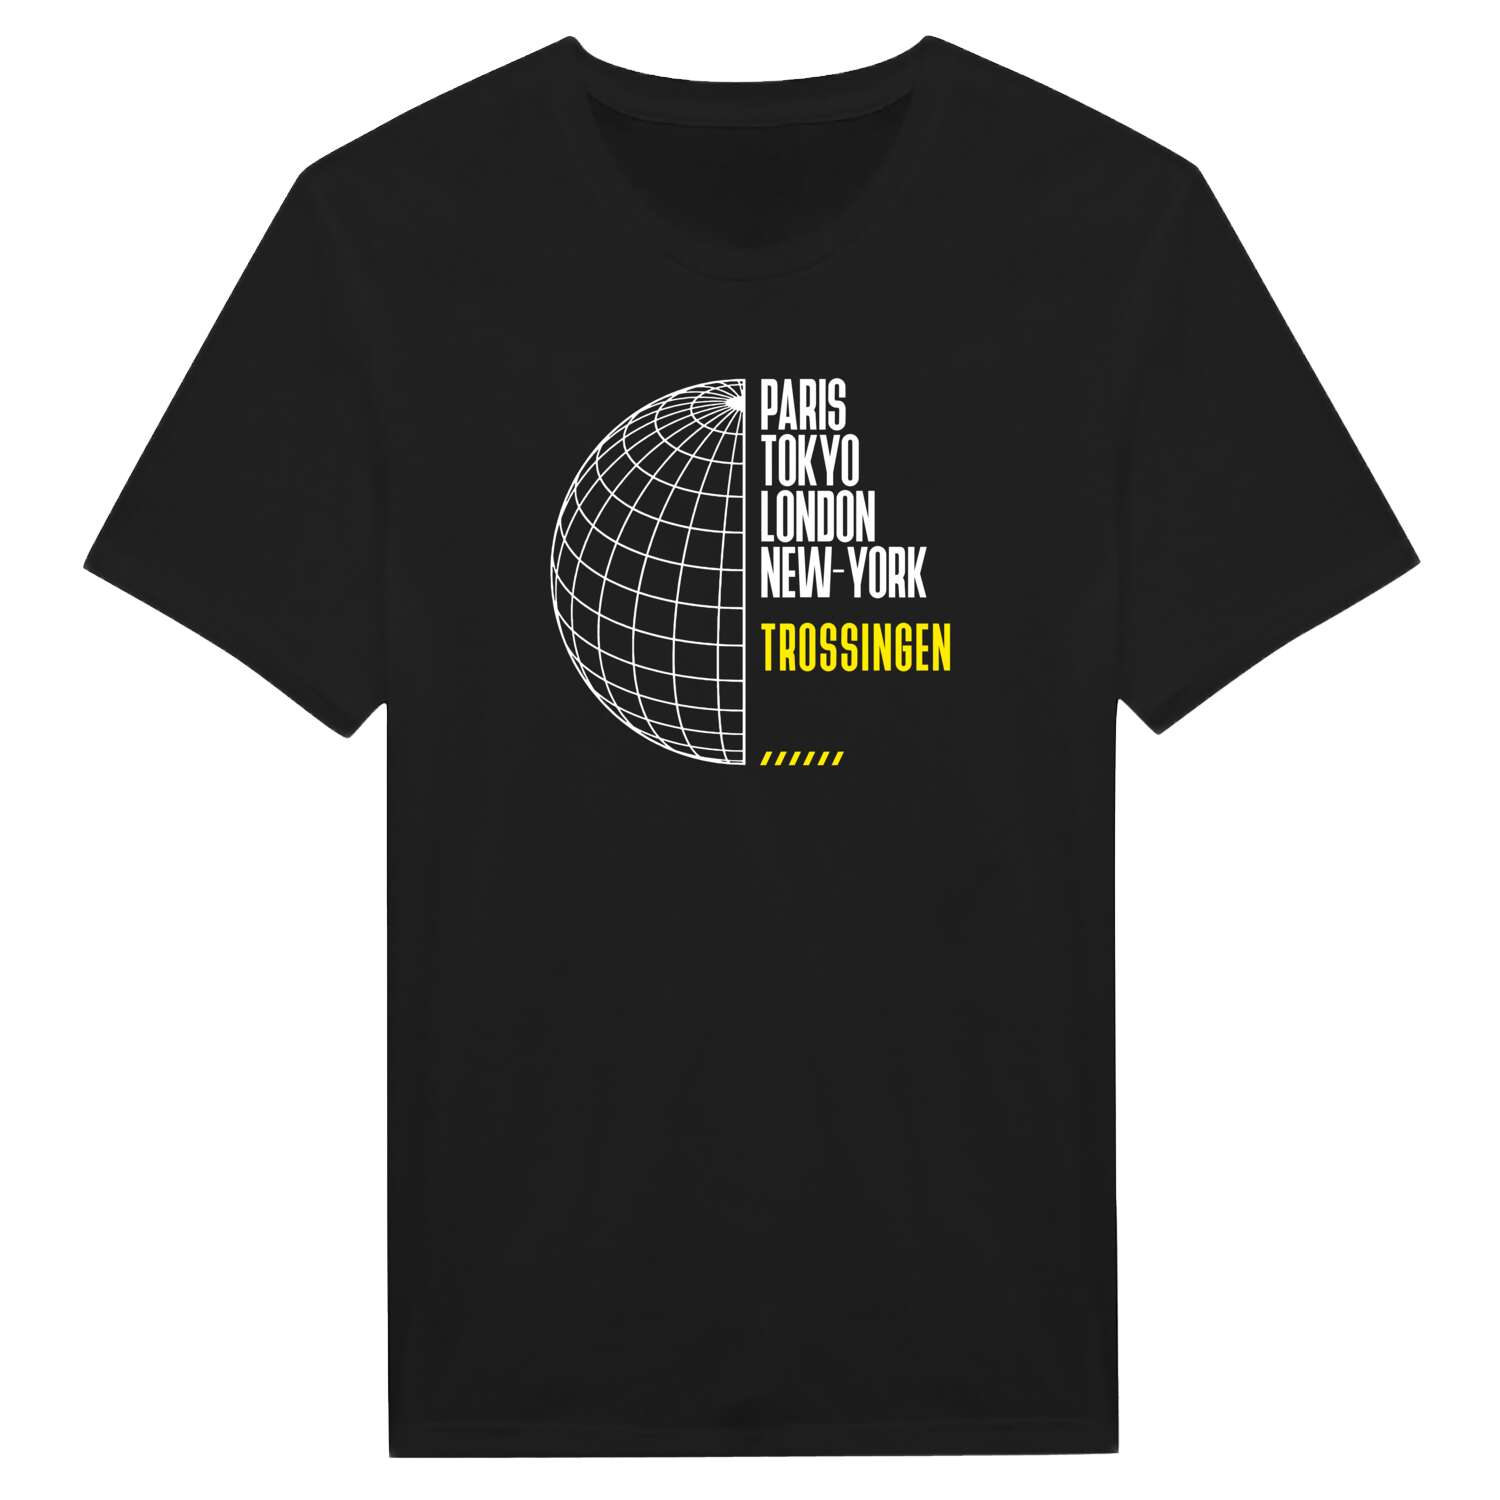 Trossingen T-Shirt »Paris Tokyo London«